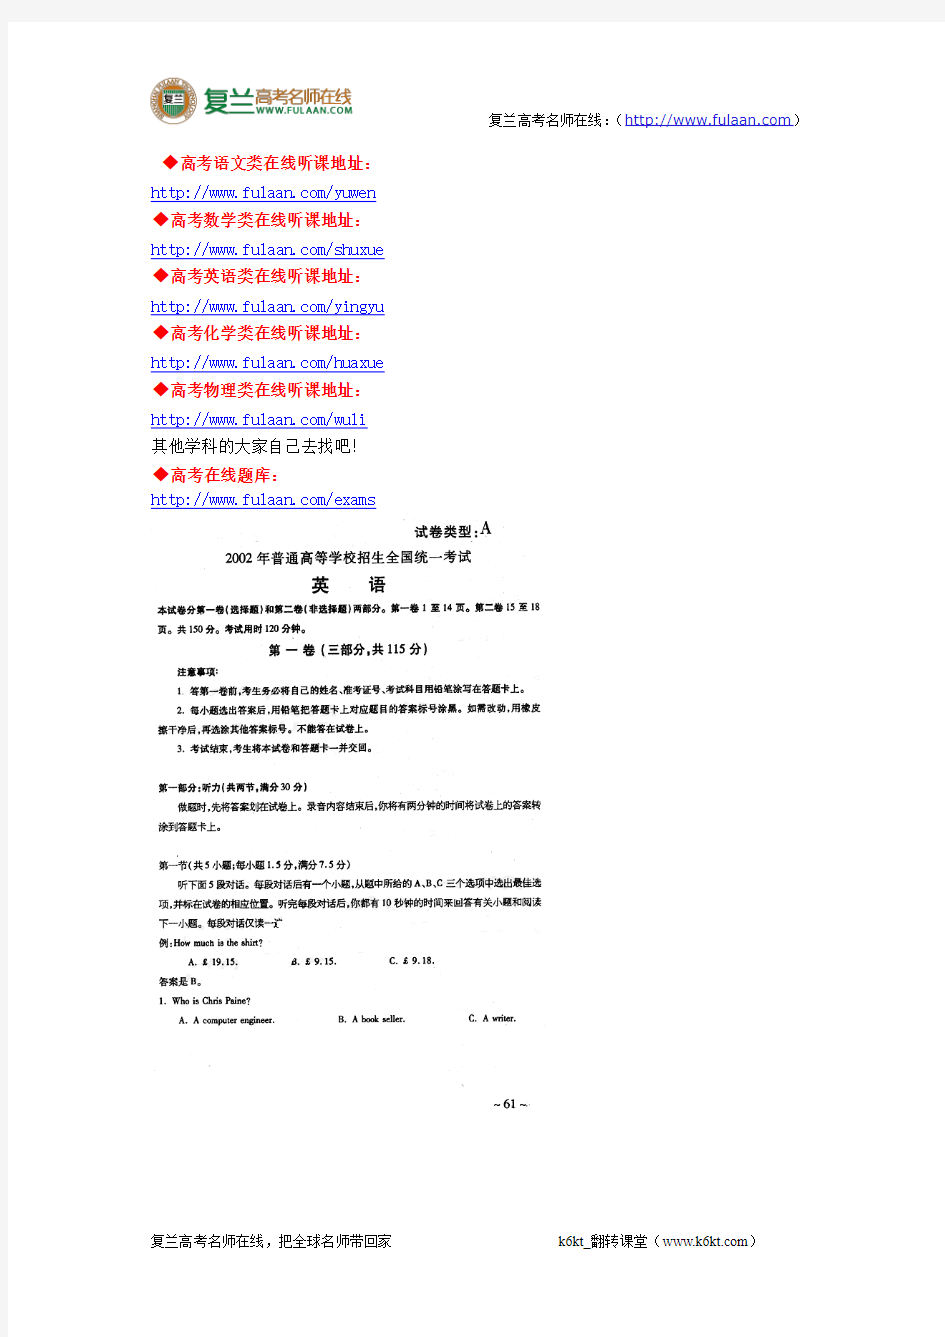 2002年高考试题——英语试卷(江苏)-精编解析版